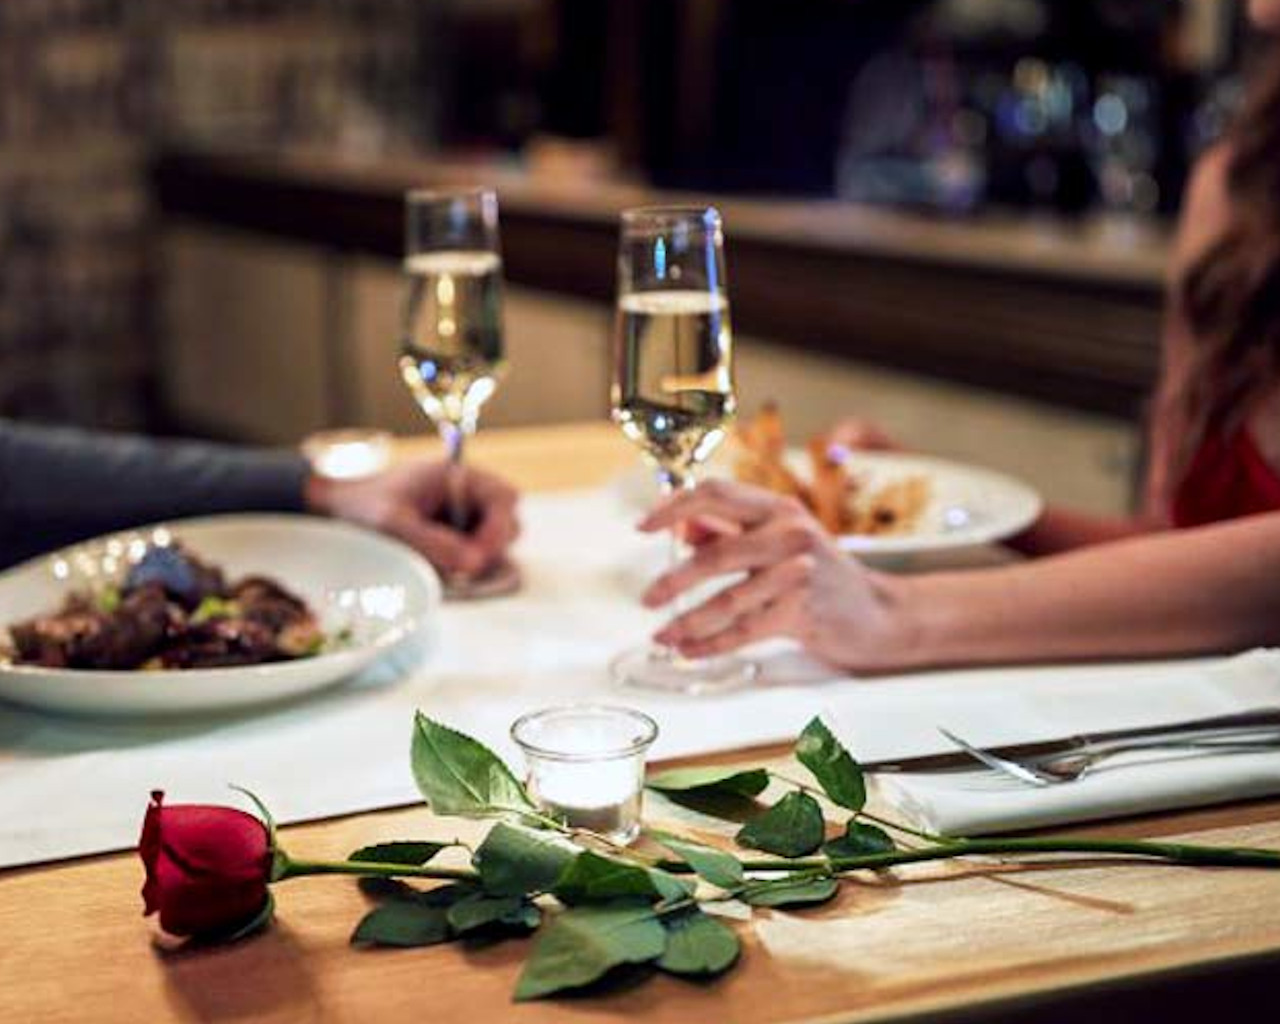 ρομαντικο δειπνο,ρομαντικο δειπνο εκπληξη,ρομαντικο δειπνο στην παραλια,ρομαντικο δειπνο με θεα,ρομαντικο δειπνο για 2,ρομαντικο δειπνο θεσσαλονικη,ρομαντικο δειπνο ακησ,ρομαντικο δειπνο συνταγεσ,ρομαντικο δειπνο αθηνα